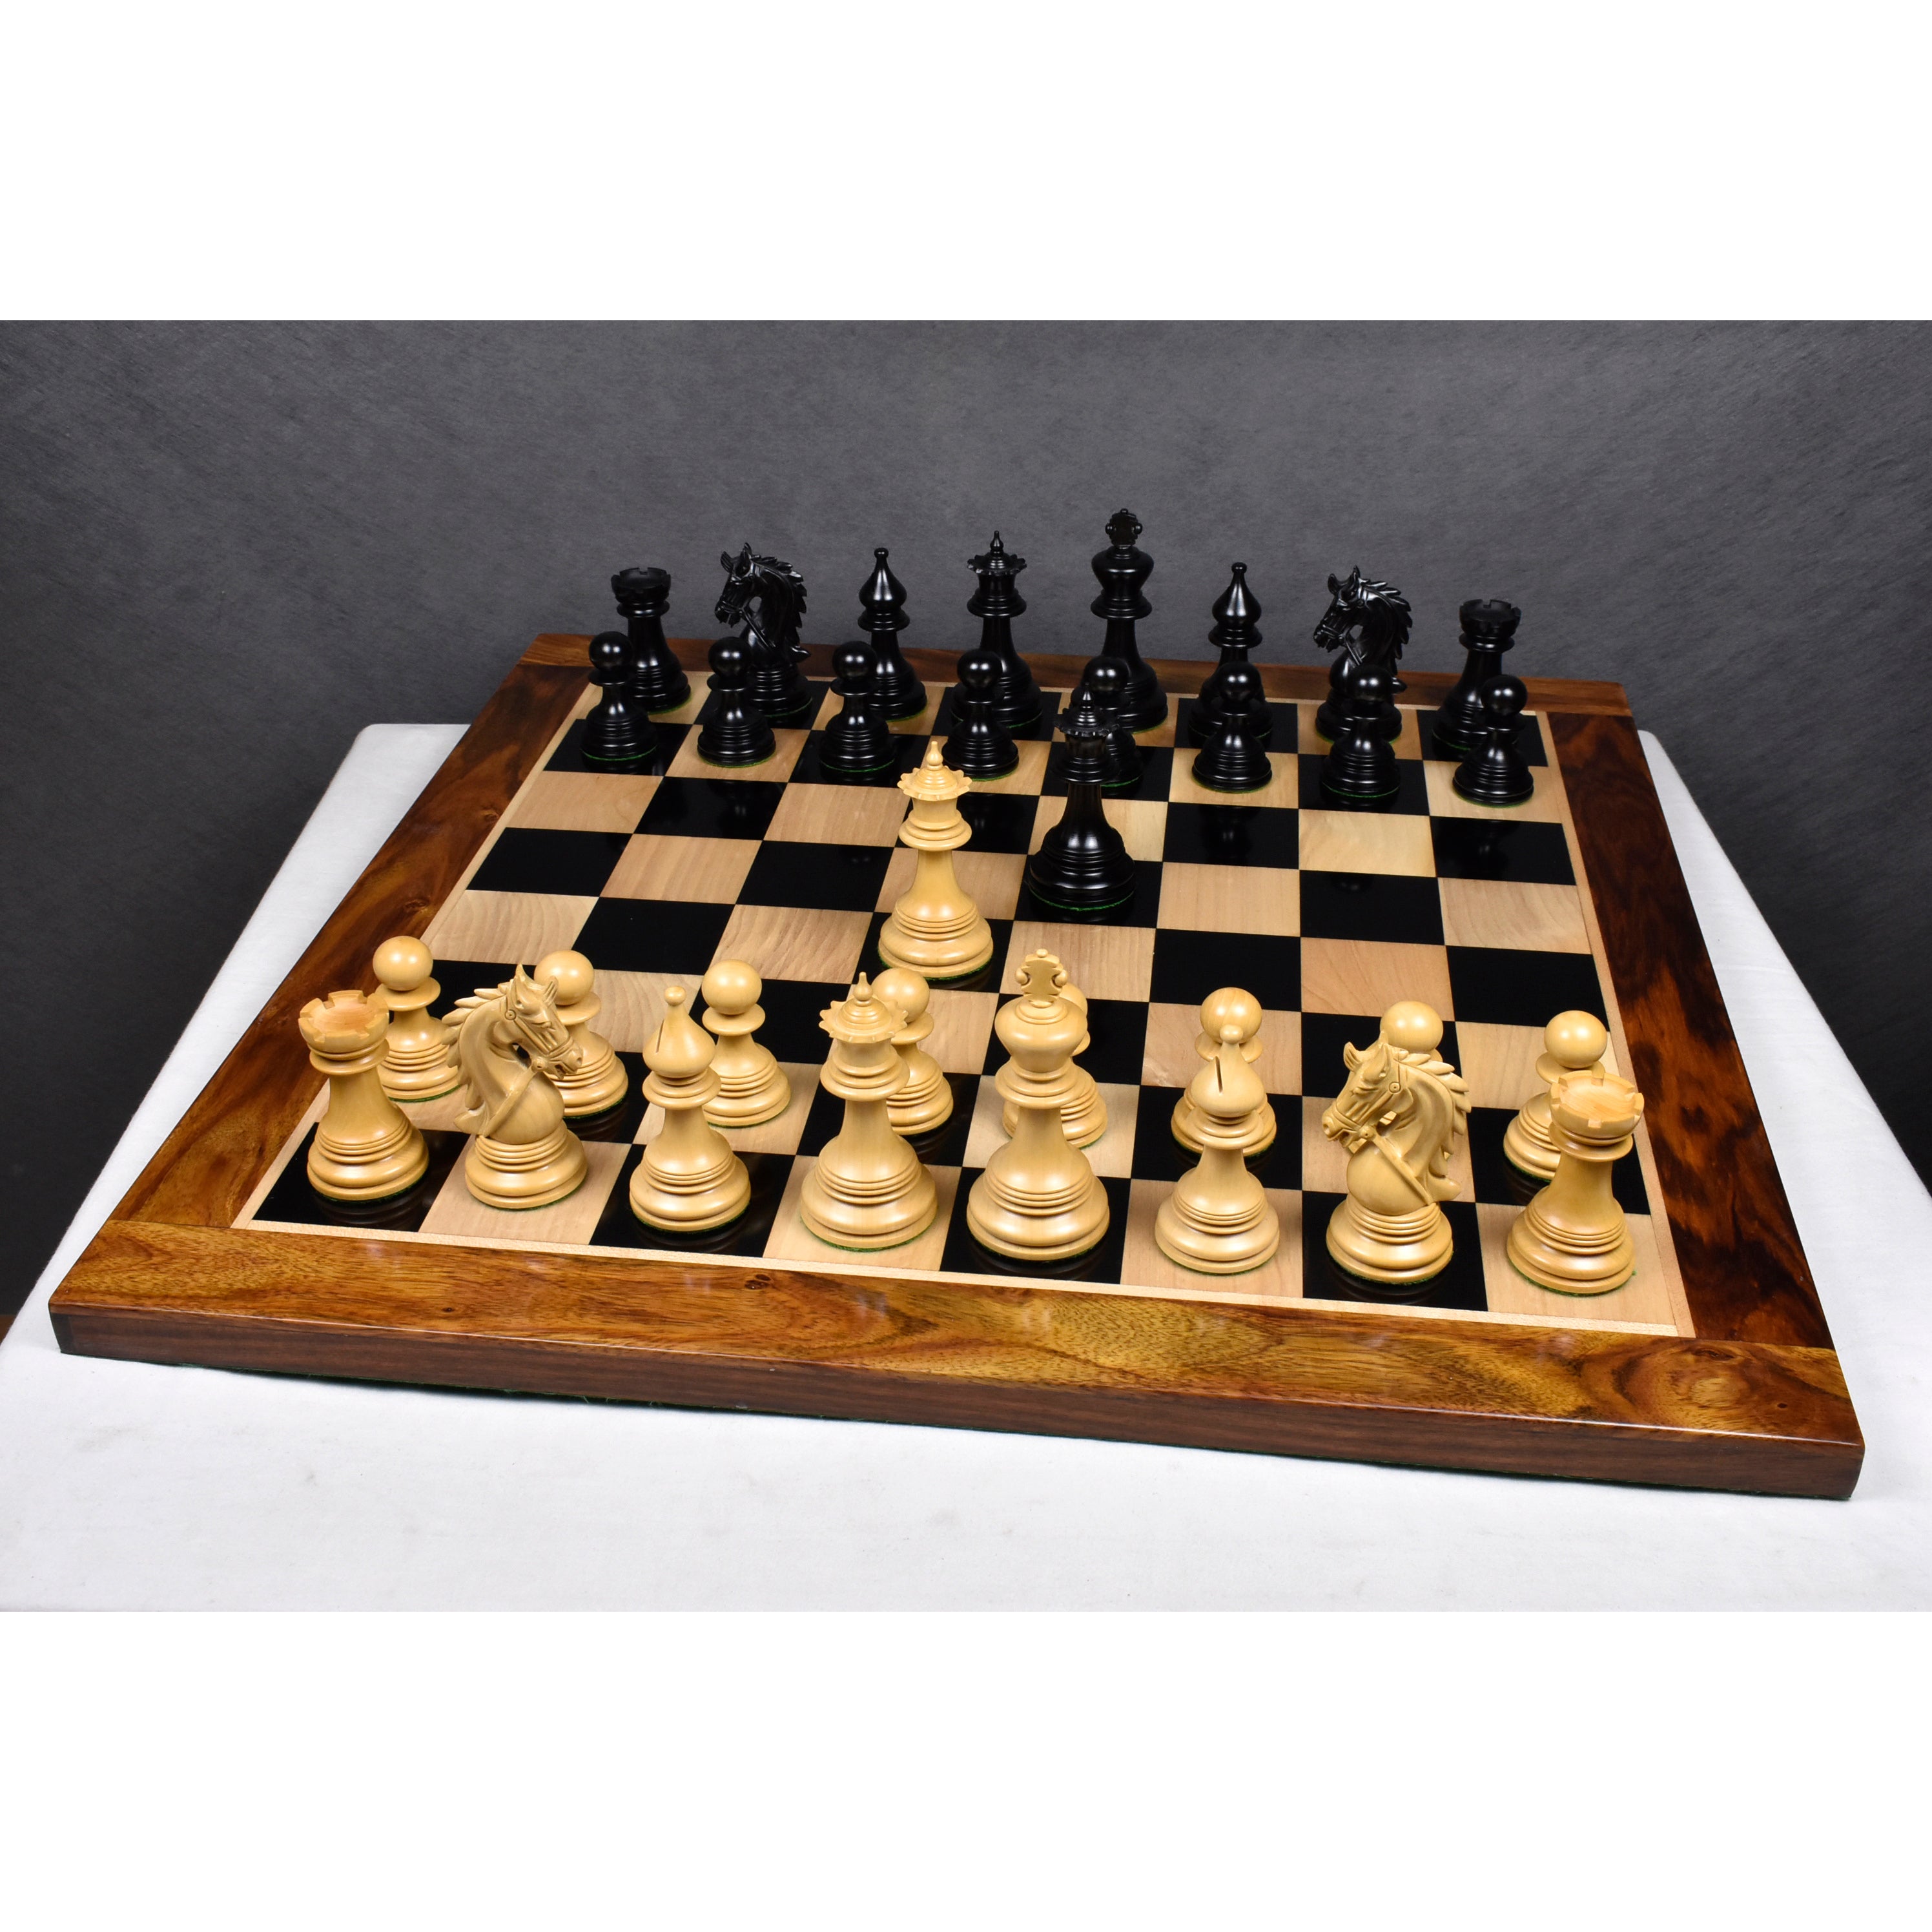 Napoleon Luxury Staunton Chess Pieces Only Set